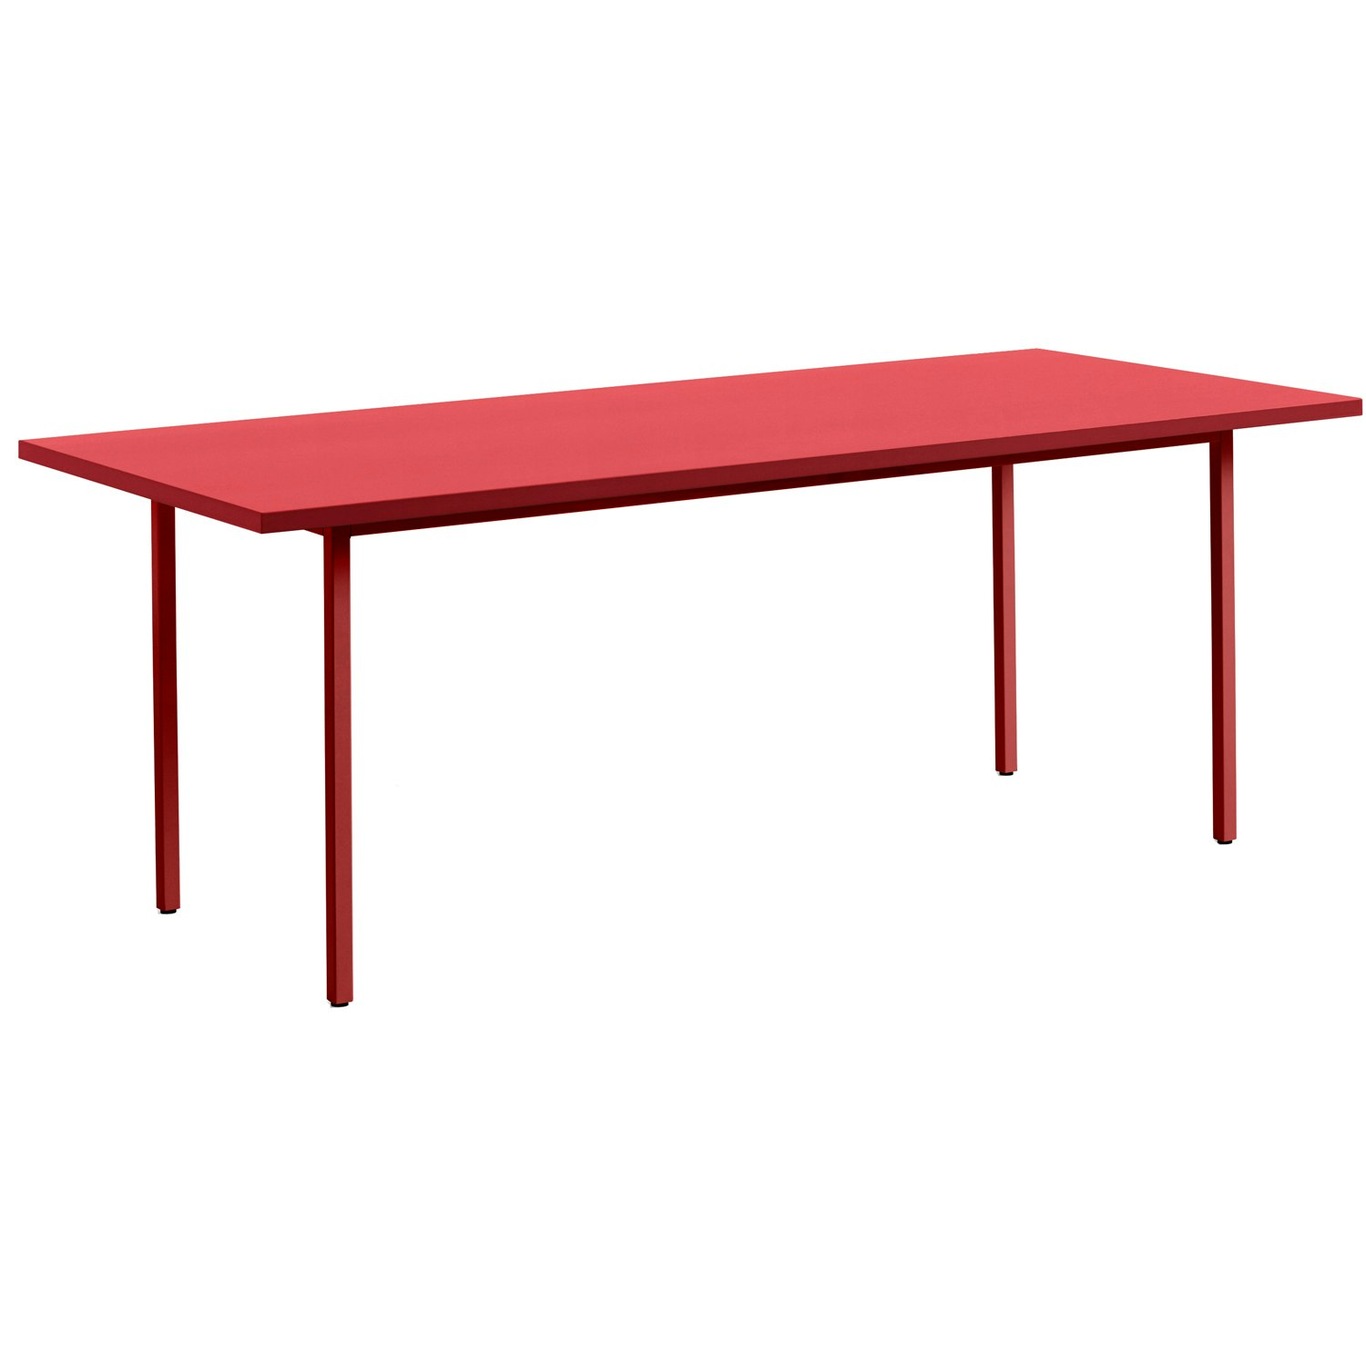 Two-Colour Pöytä 200x90 cm, Viininpunainen / Punainen